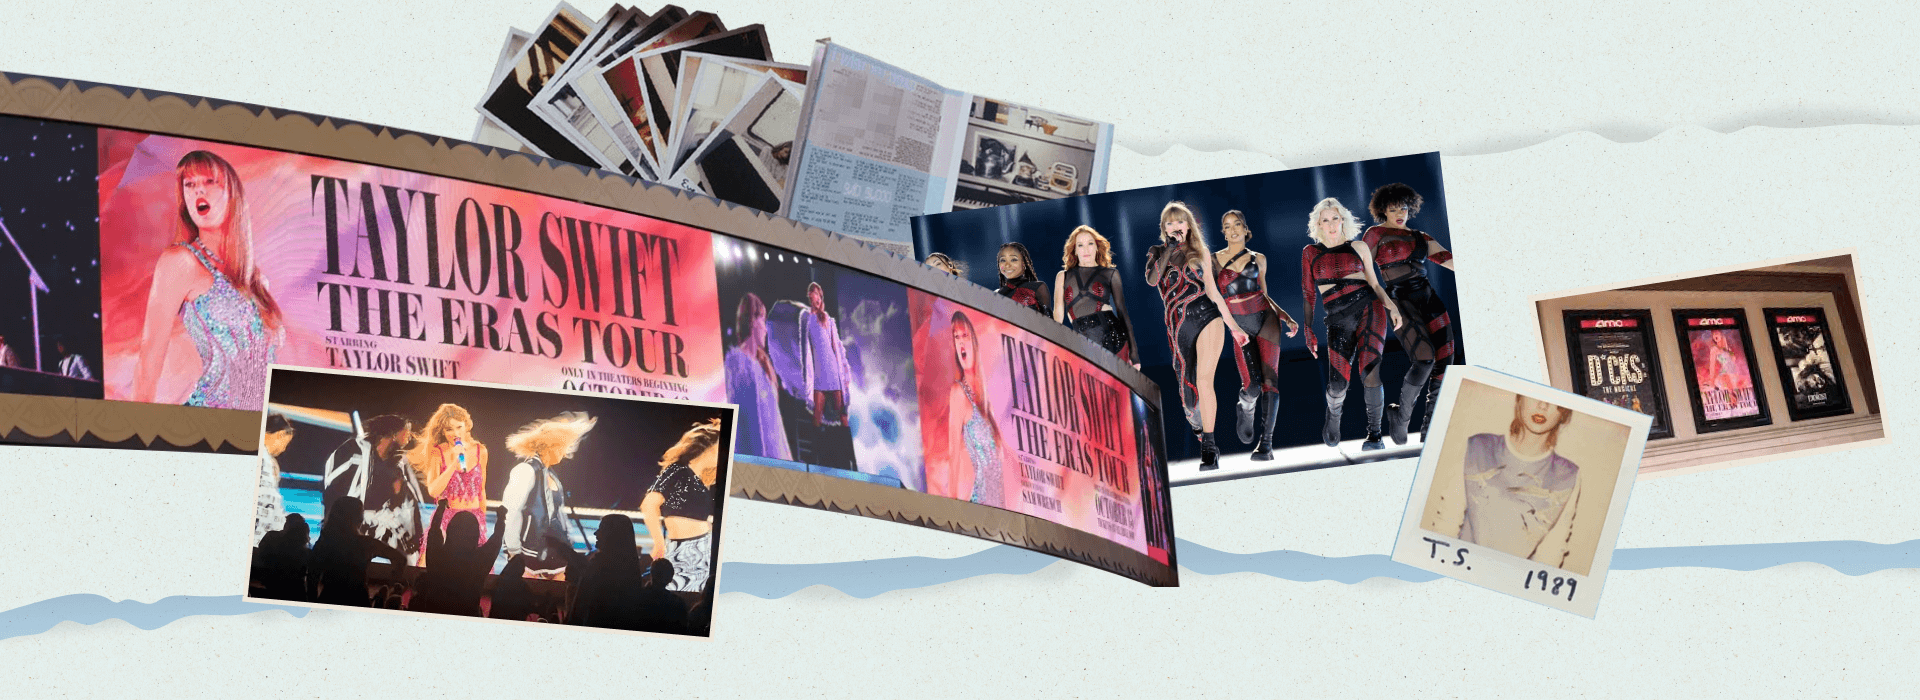 Từ công chúa nhạc đồng quê tới tỷ phú âm nhạc: Taylor Swift chinh phục toàn cầu với tư duy marketing đỉnh cao - Ảnh 4.